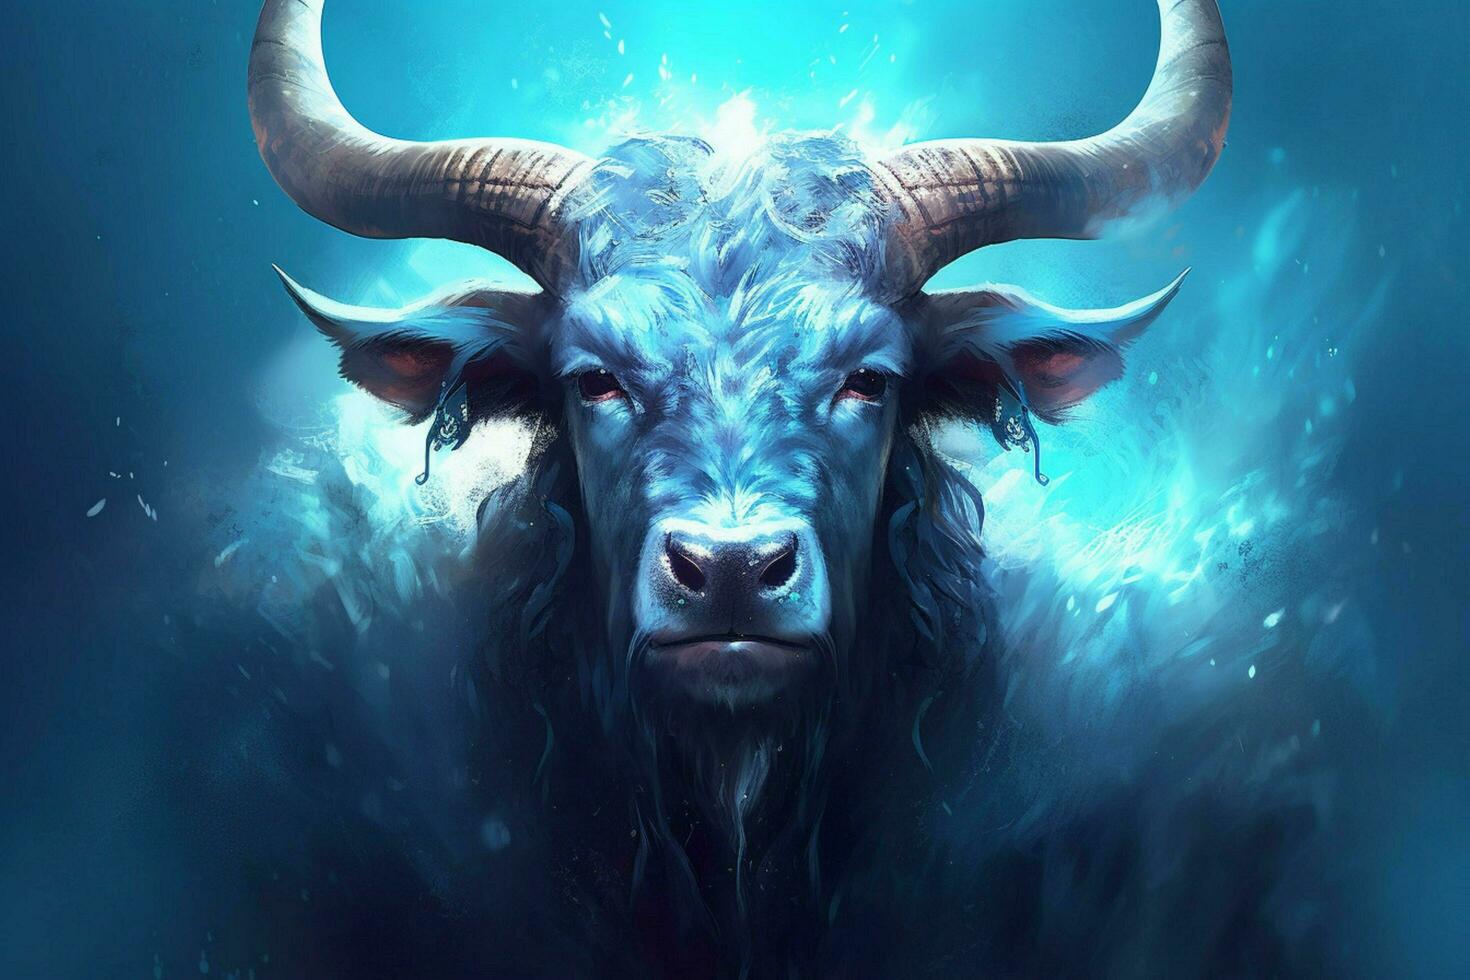 een poster van een koe met een blauw hoofd en hoorns foto